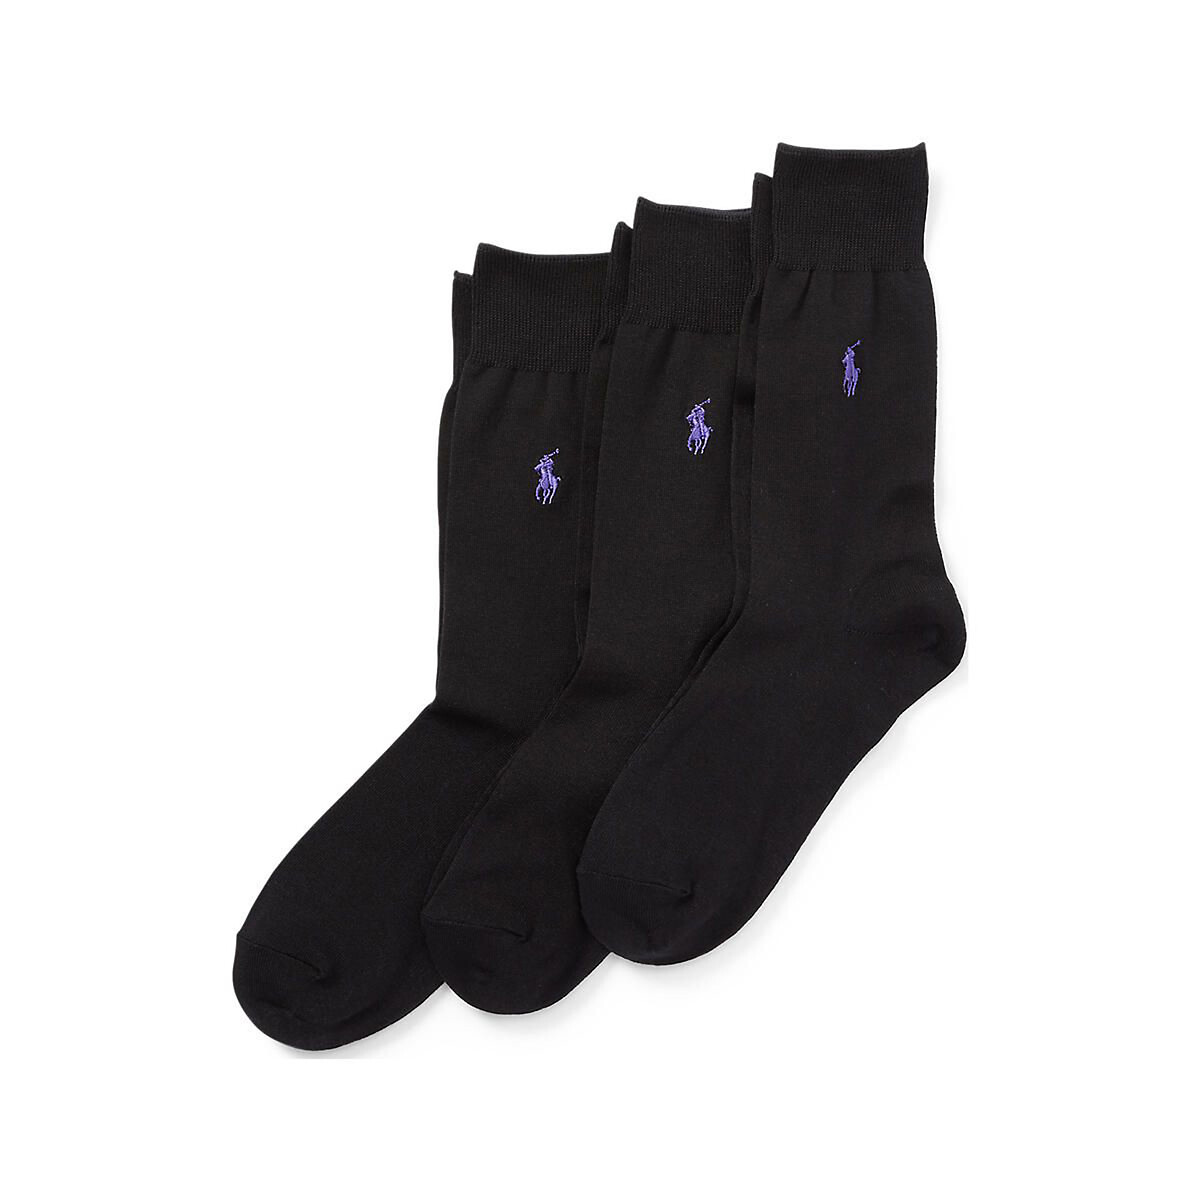 Комплект из 3 пар носков La Redoute 43/46 черный комплект из трех пар носков la redoute 43 46 синий